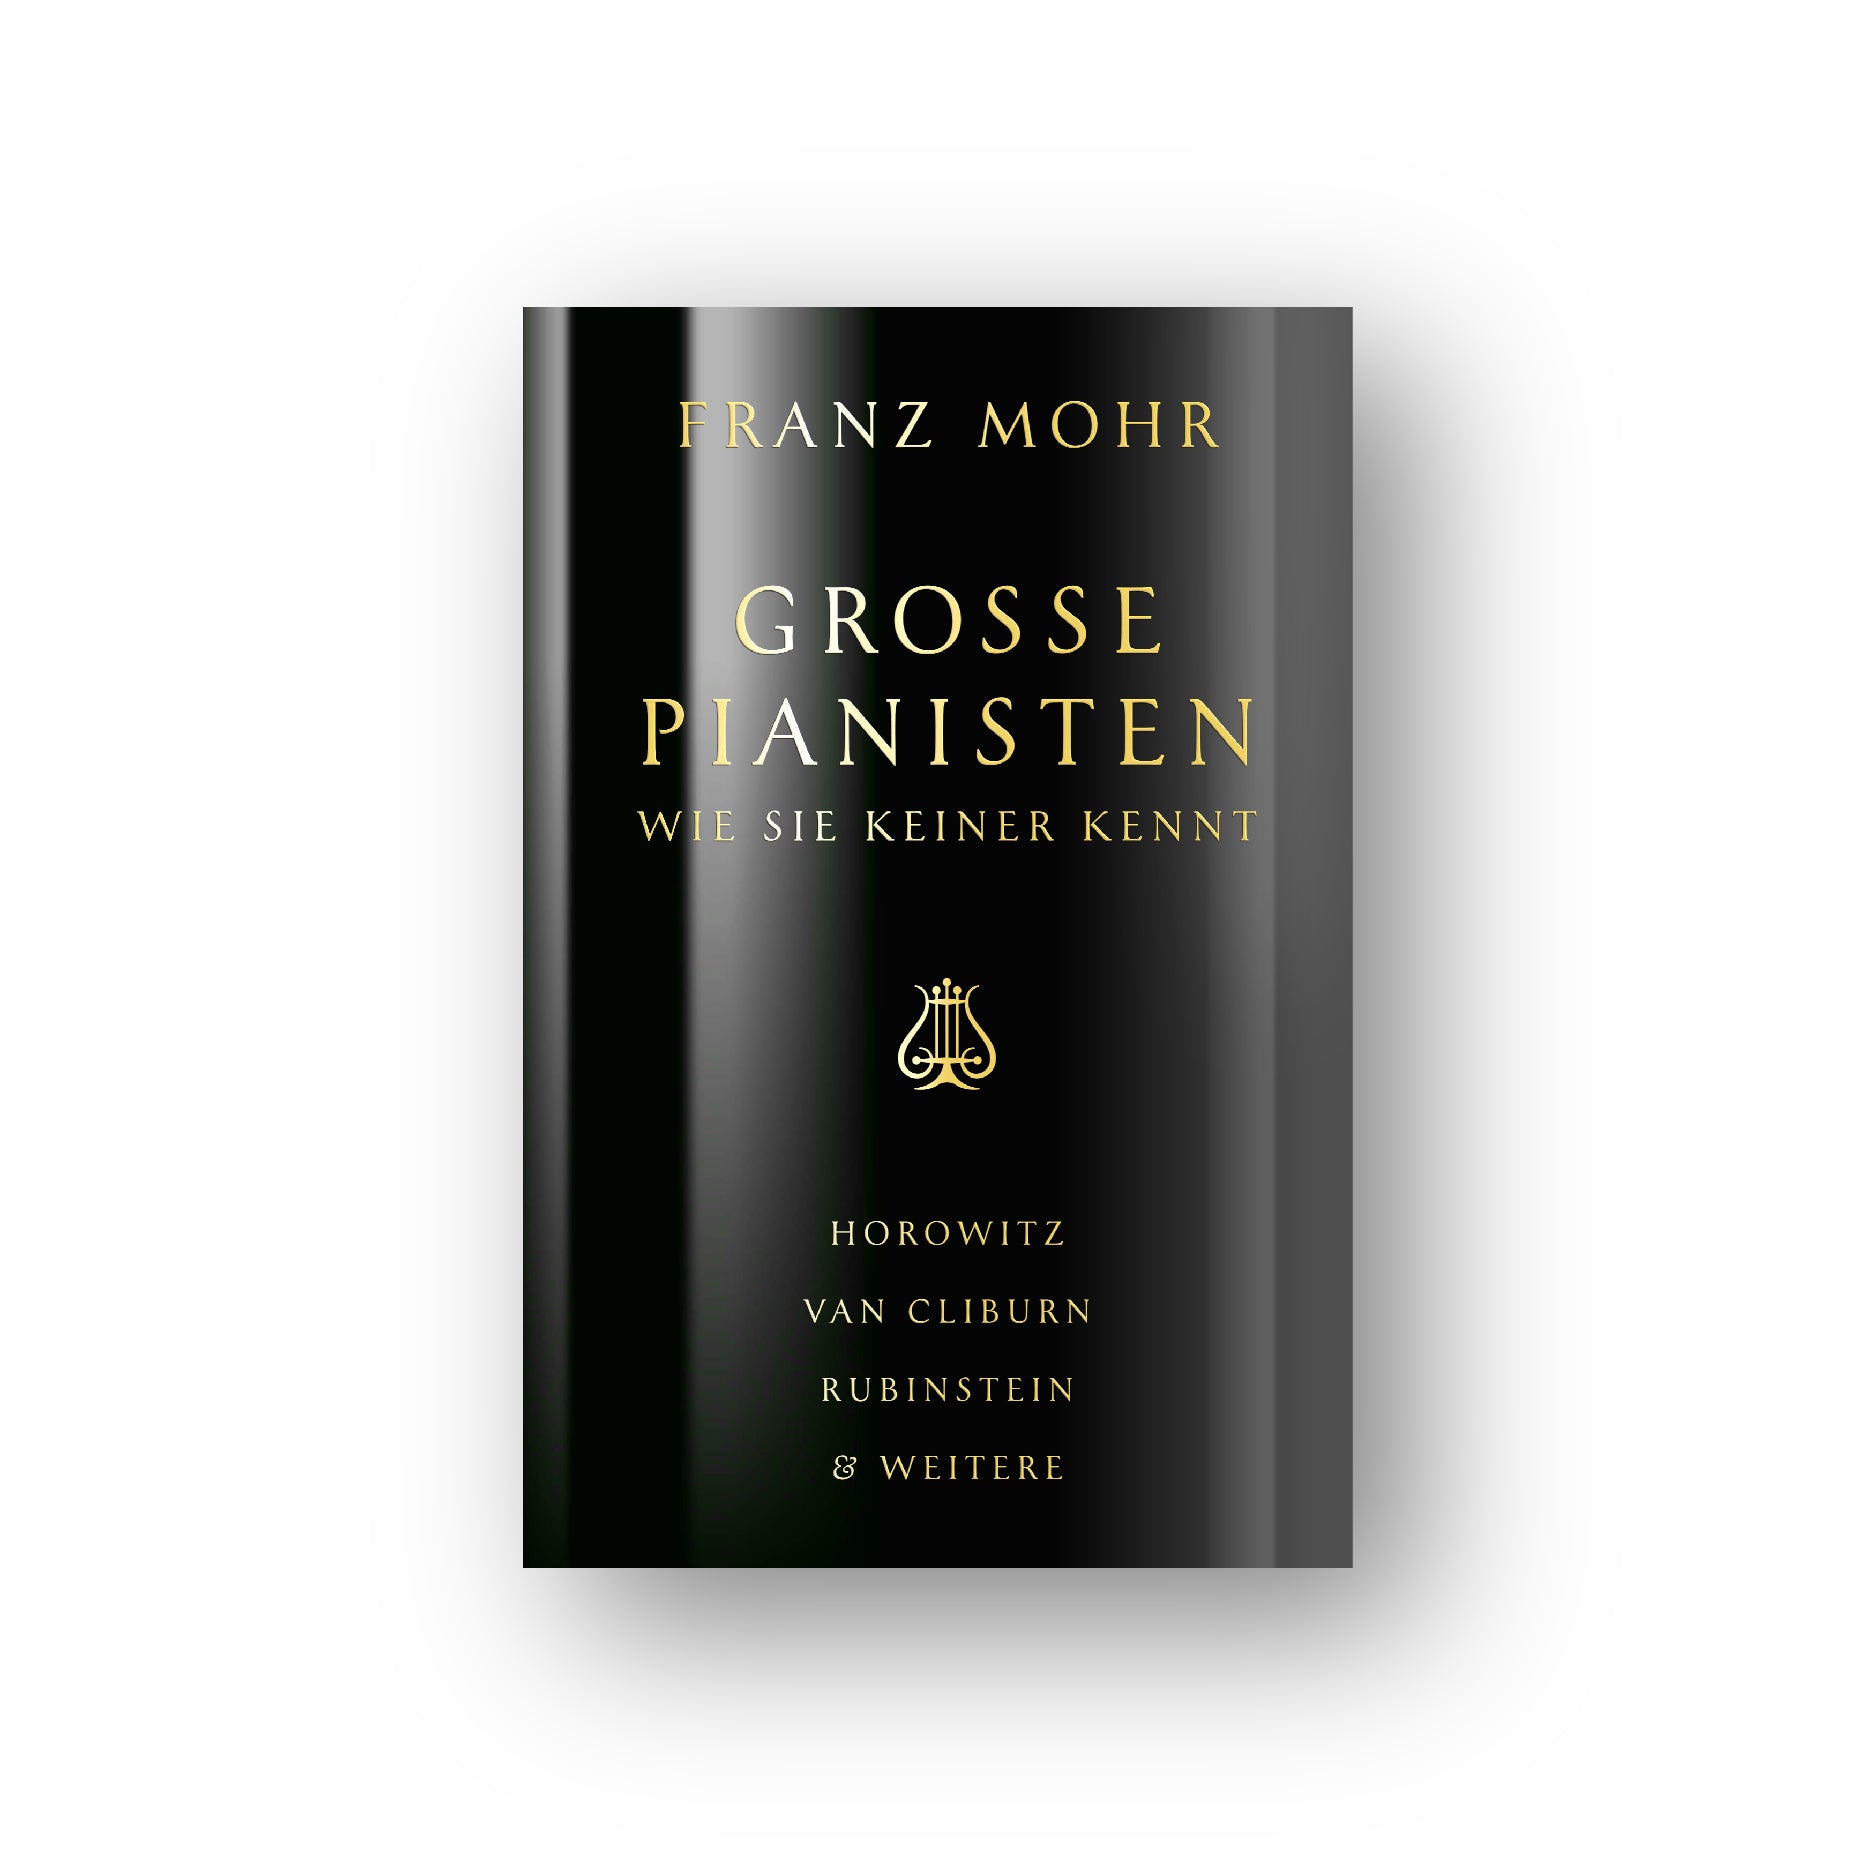 Franz Mohr: Große Pianisten wie sie keiner kennt von Horowitz, Van Cliburn, Rubinstein & weitere